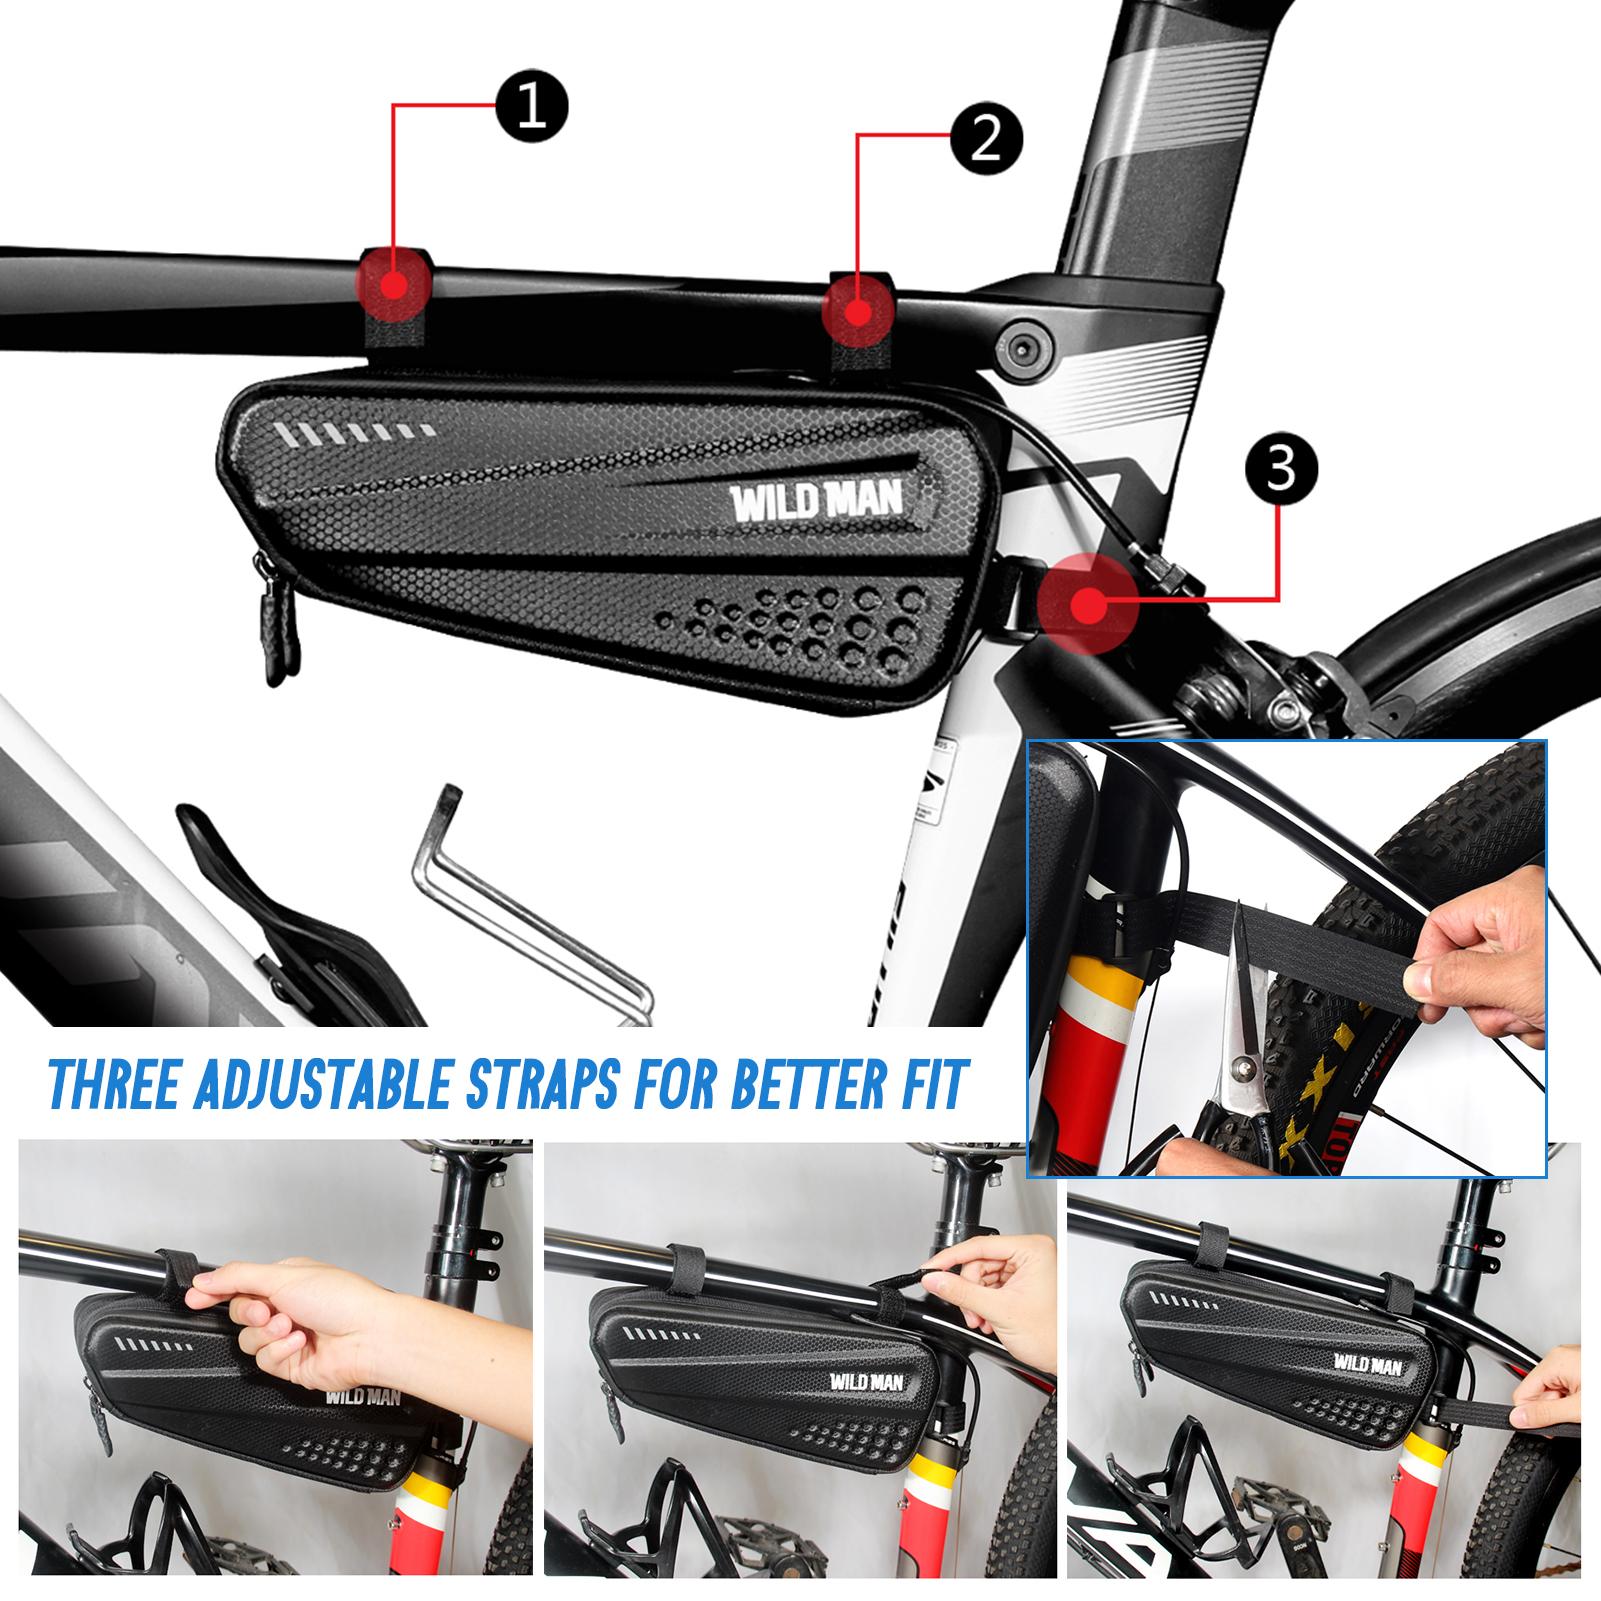 Chiếc túi đựng đồ đi xe đạp 1,2L vỏ cứng, có khả năng chống thấm nước, chống rơi và đủ lớn cho các vật dụng và dụng cụ hàng ngày của bạn.